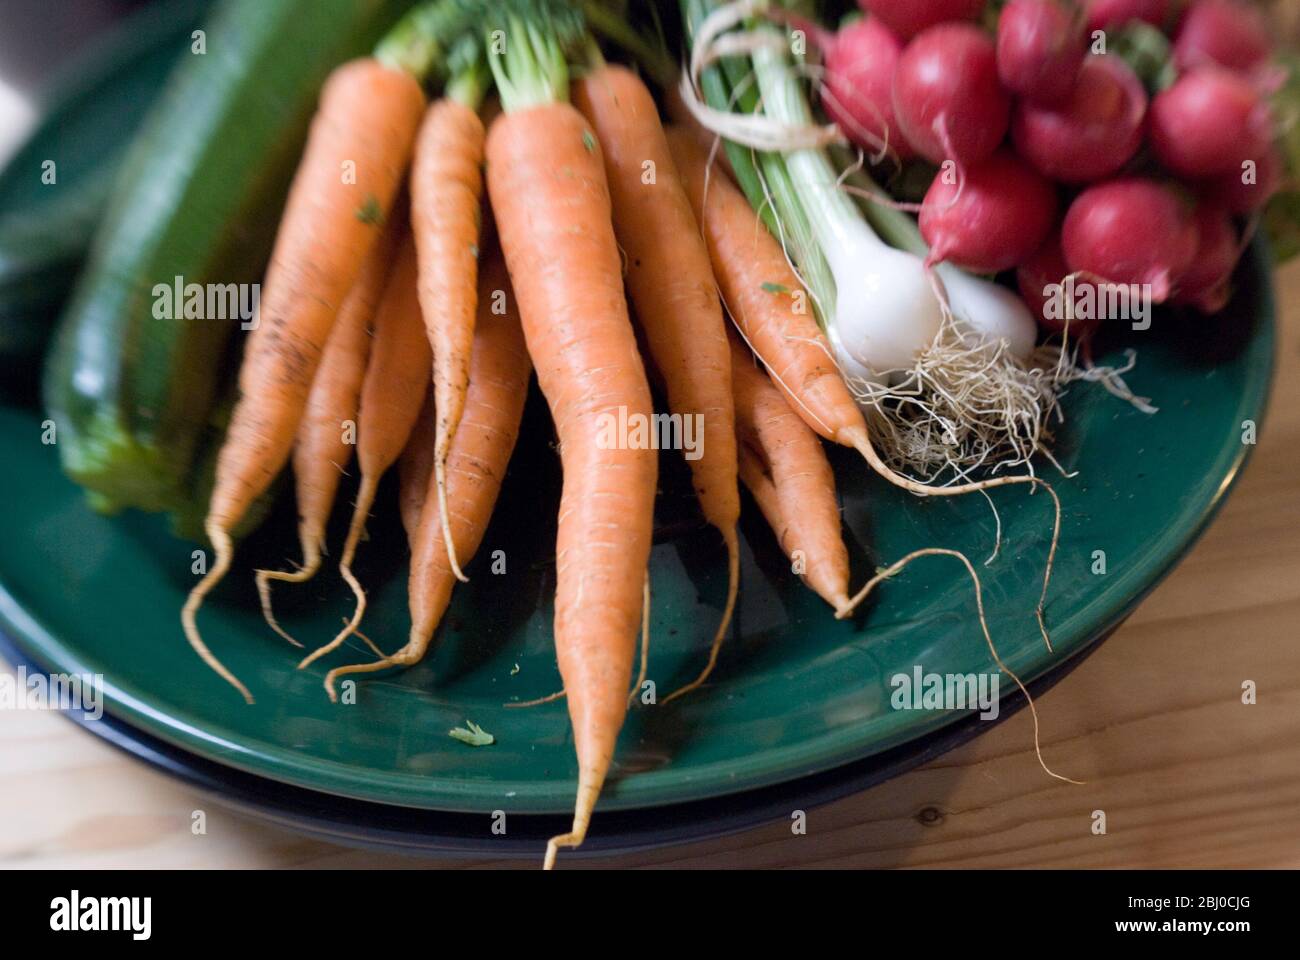 Frisches Gemüse vom Bauernmarkt auf dunkelgrüner Platte - Stockfoto